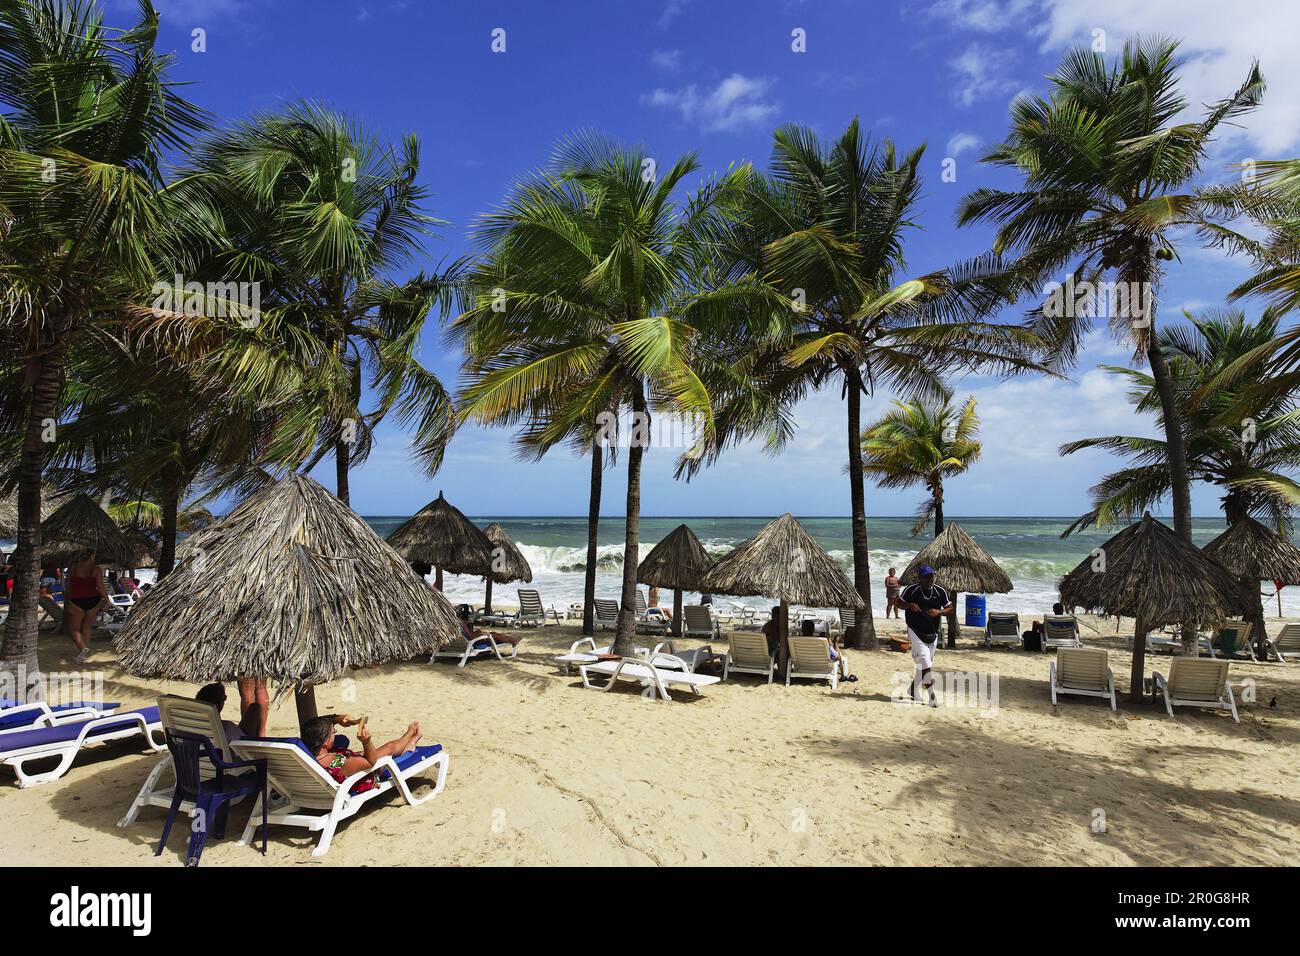 Palm-lined beach, Playa Puerto La Cruz, Nueva Esparta, Venezuela Stock Photo